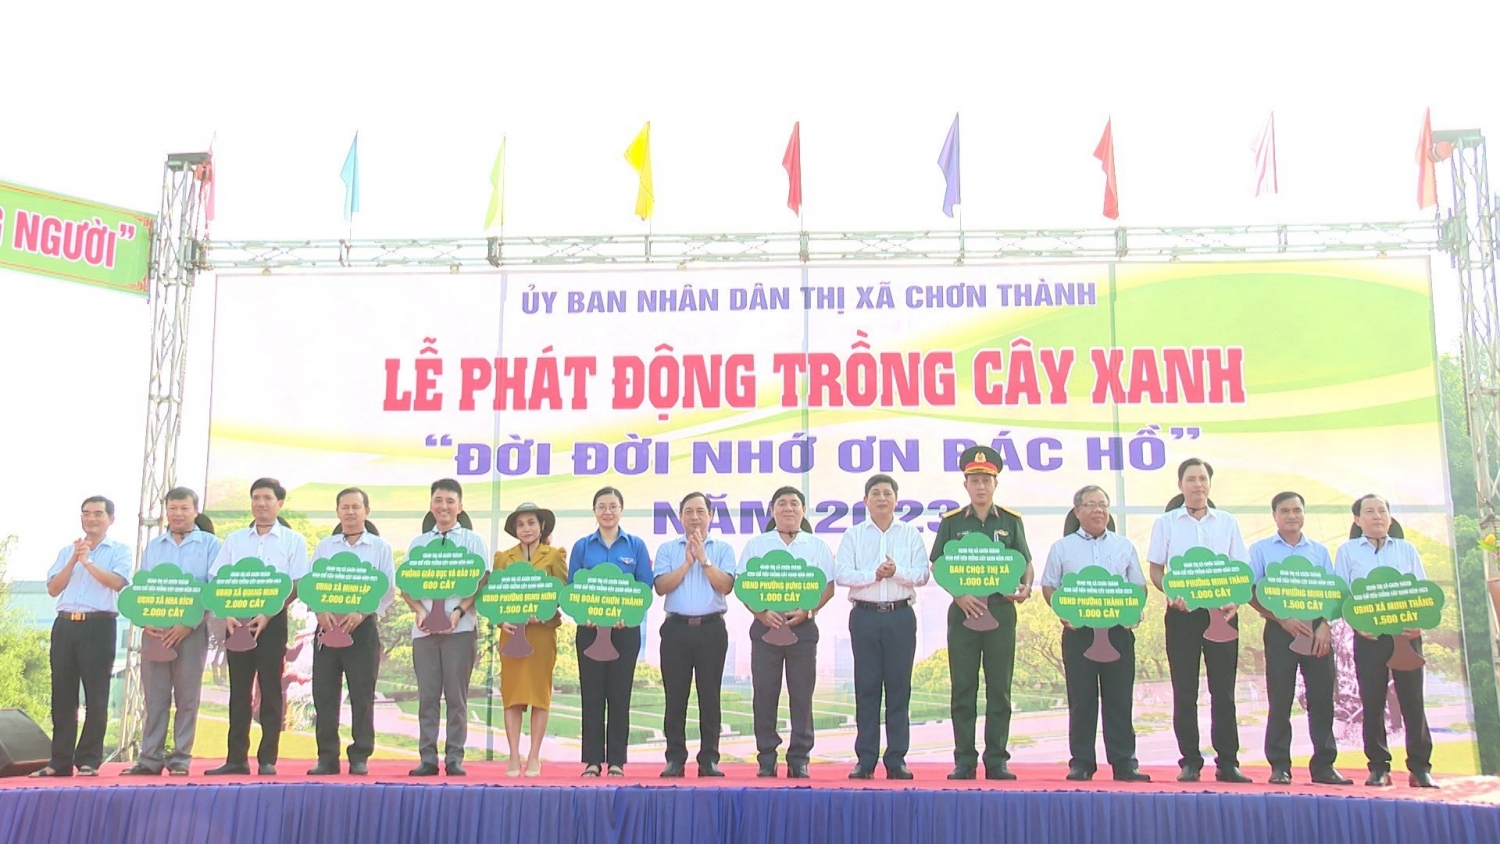 Lãnh đạo thị xã Chơn Thành, trao bảng tượng trưng chỉ tiêu trồng cây xanh cho các cơ quan, đơn vị và các xã, phường